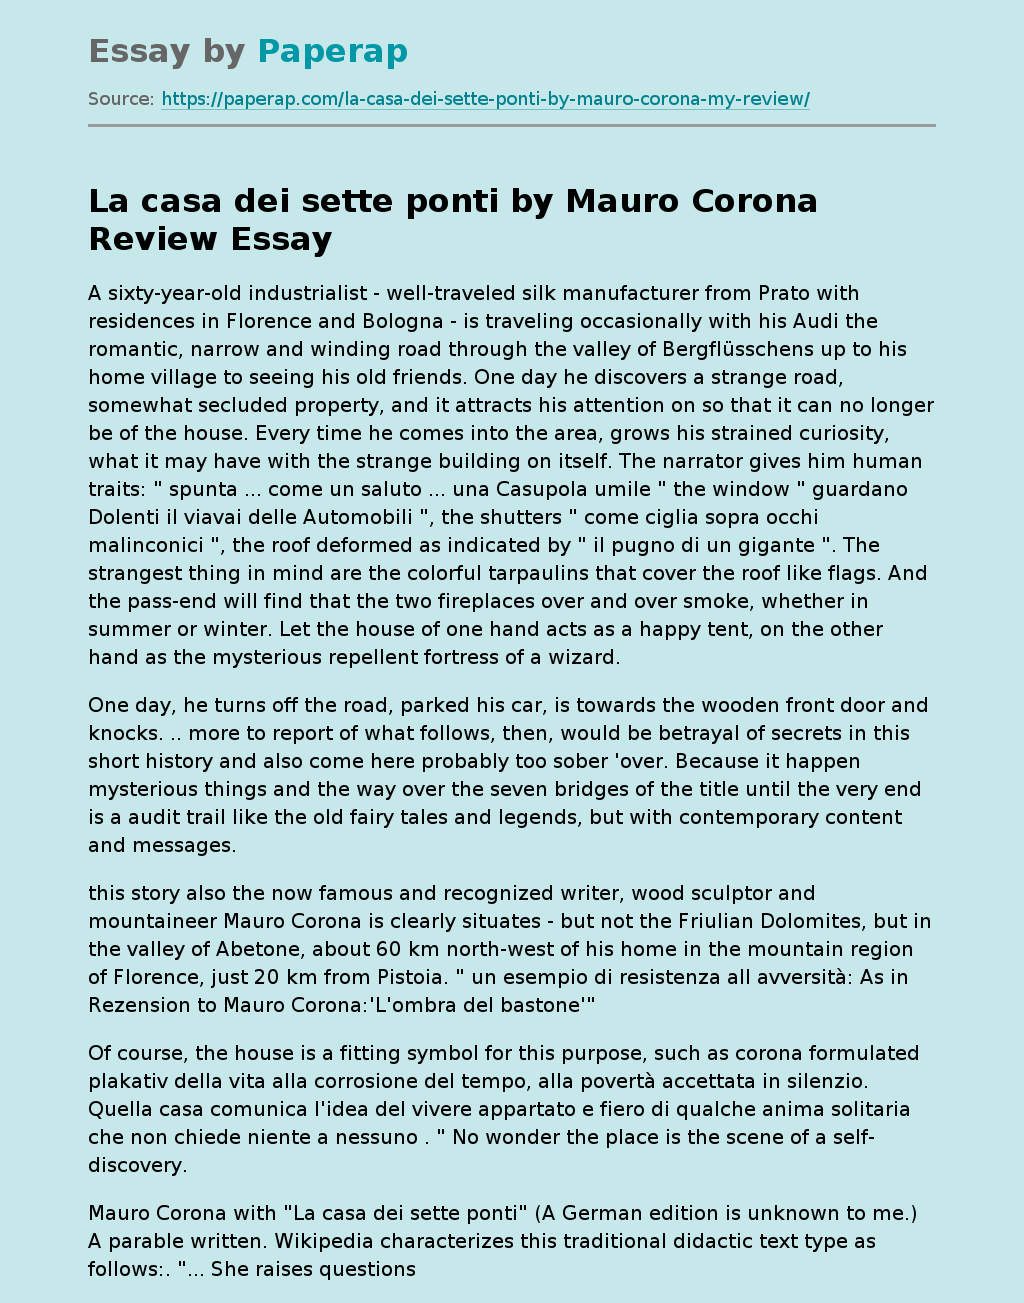 La casa dei sette ponti by Mauro Corona Review